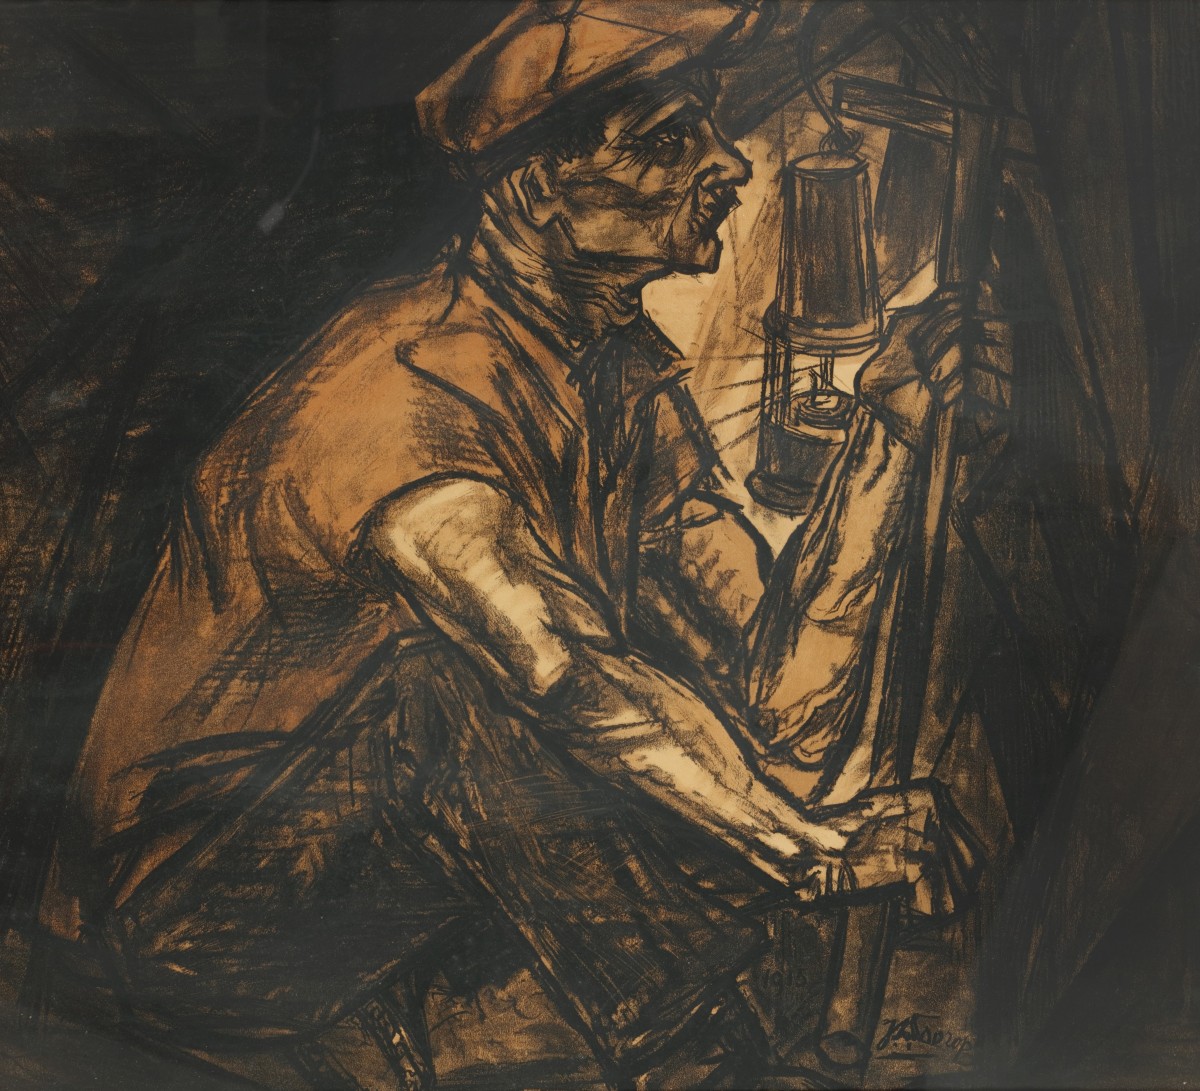 Jan Toorop (Poerworedjo, Indonesie, 1858 - 1928 Den Haag), De mijnwerker. e Mijnwerker